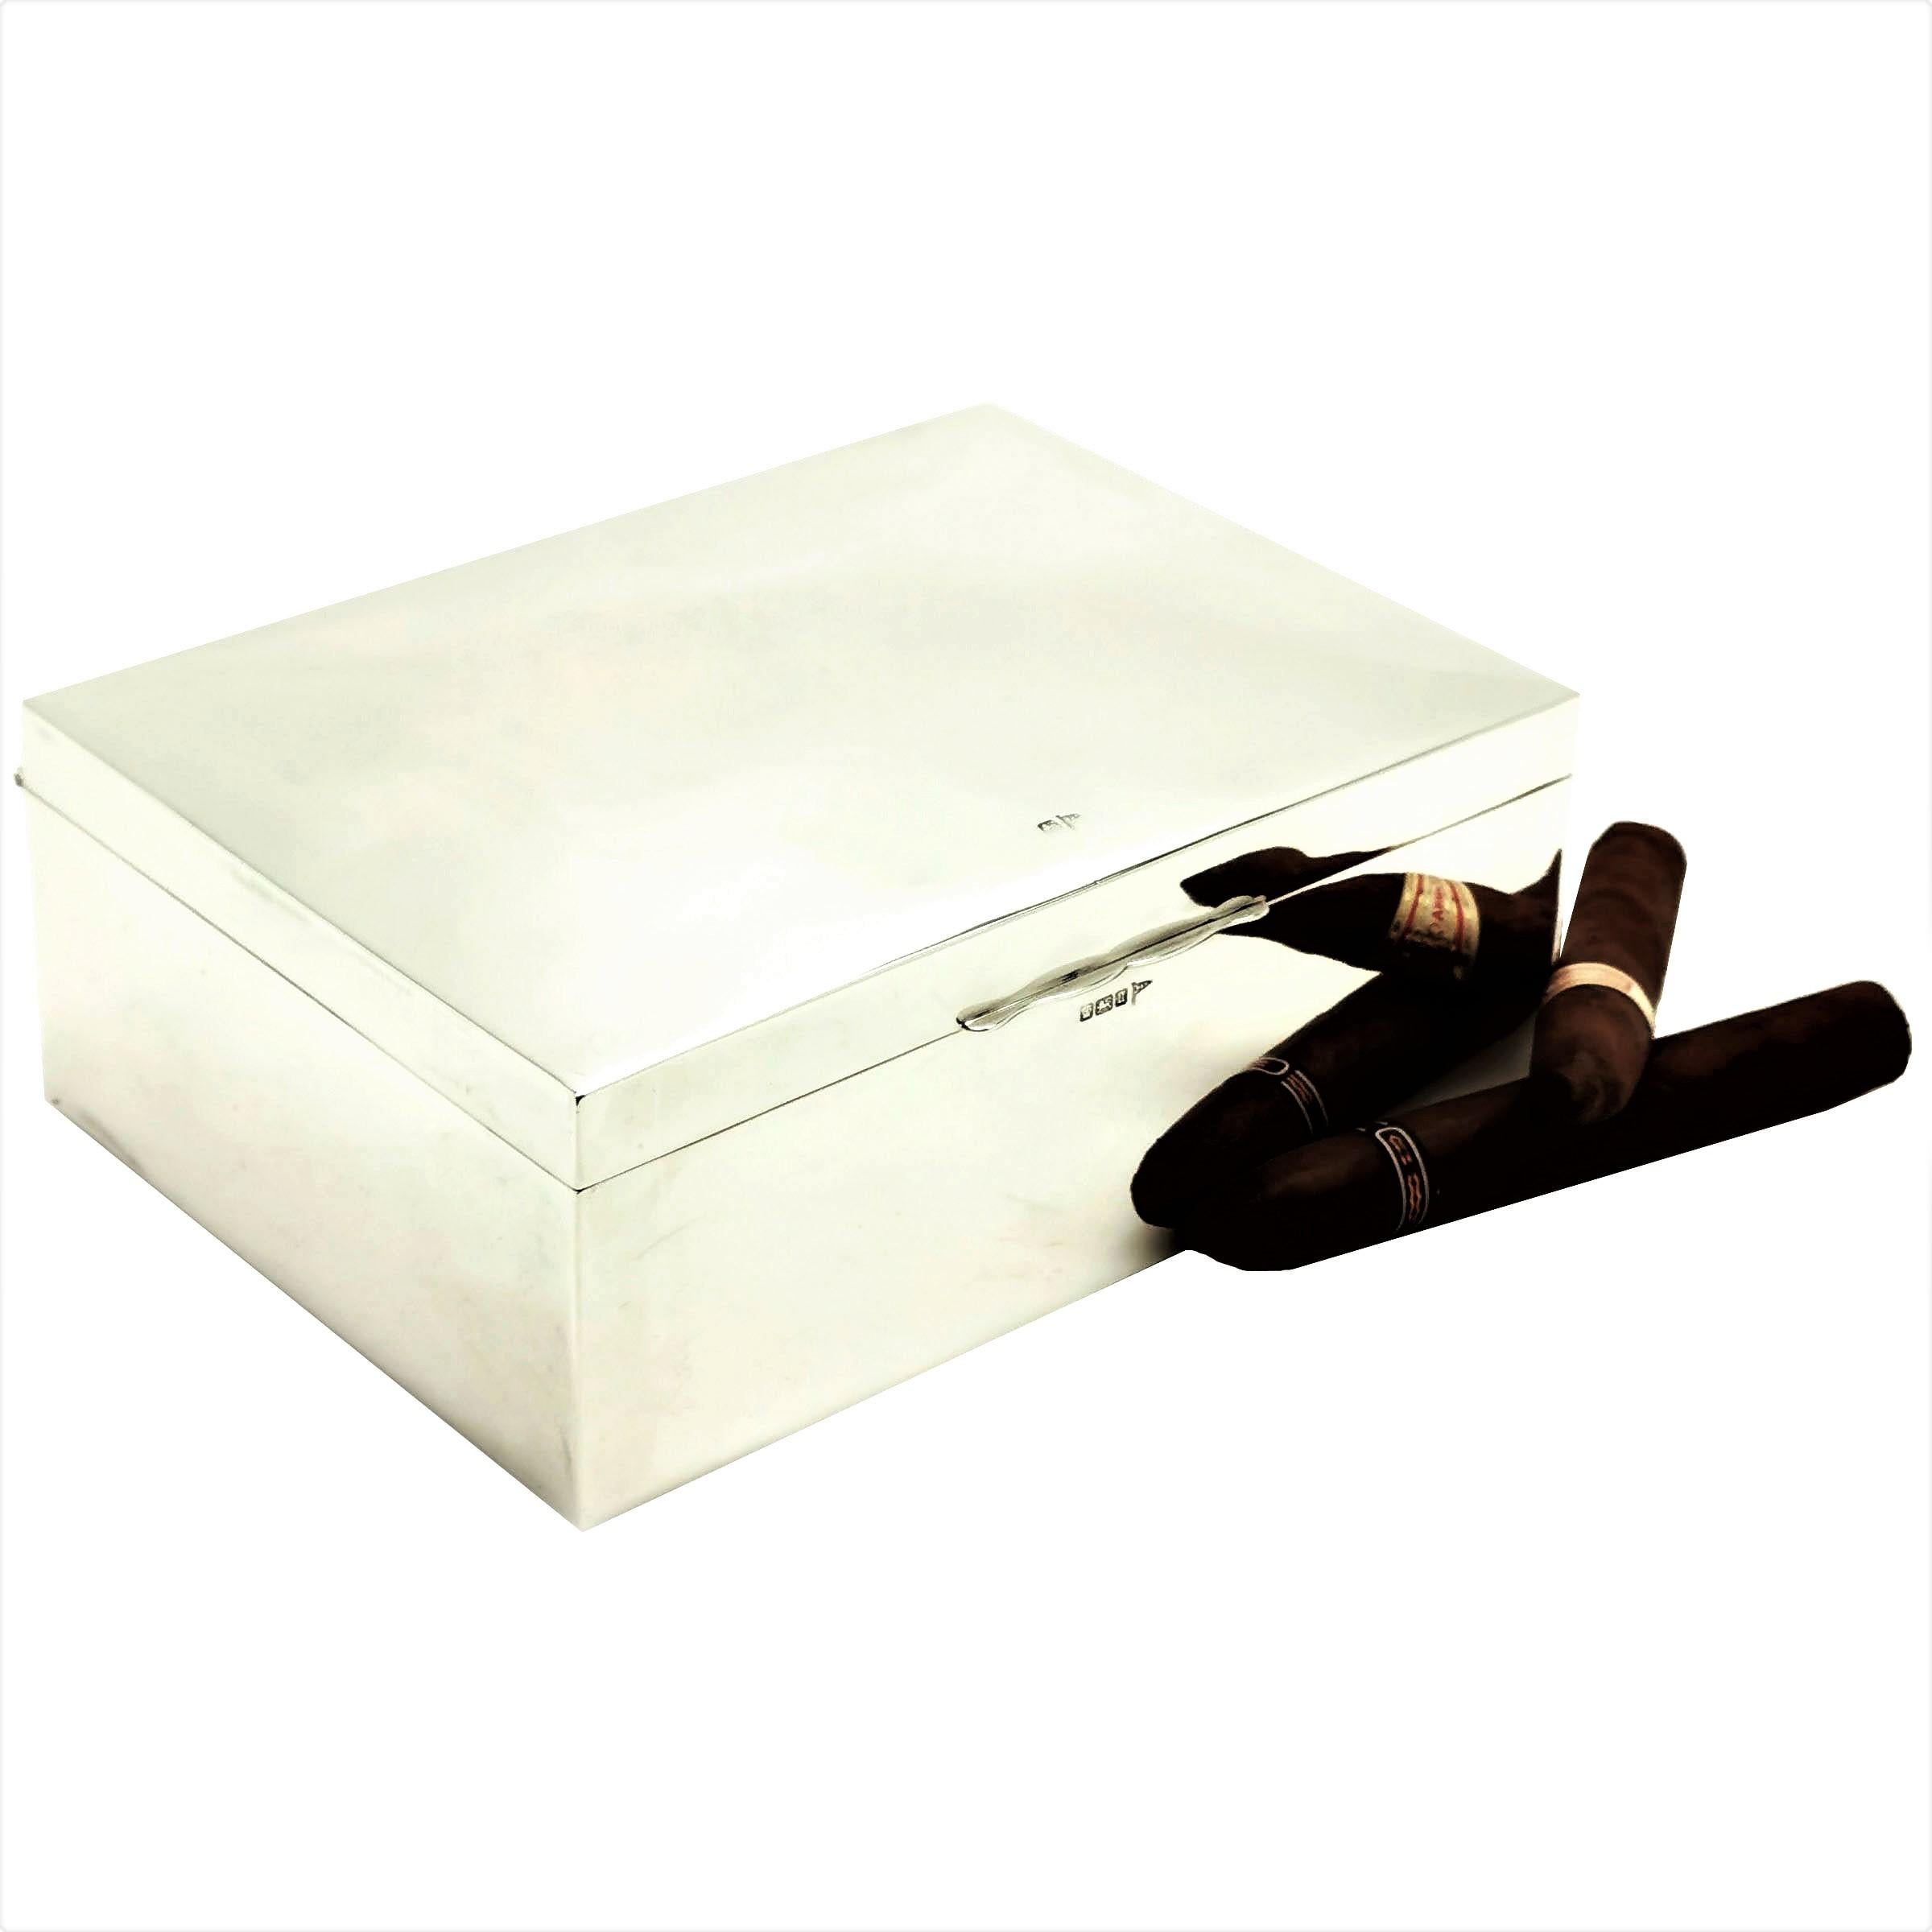 Une boîte à cigares classique en argent massif antique avec un extérieur en argent hautement poli. L'intérieur de la boîte d'argent a une base doublée de bois de cèdre et le couvercle est doré. L'intérieur est équipé d'une cloison en bois